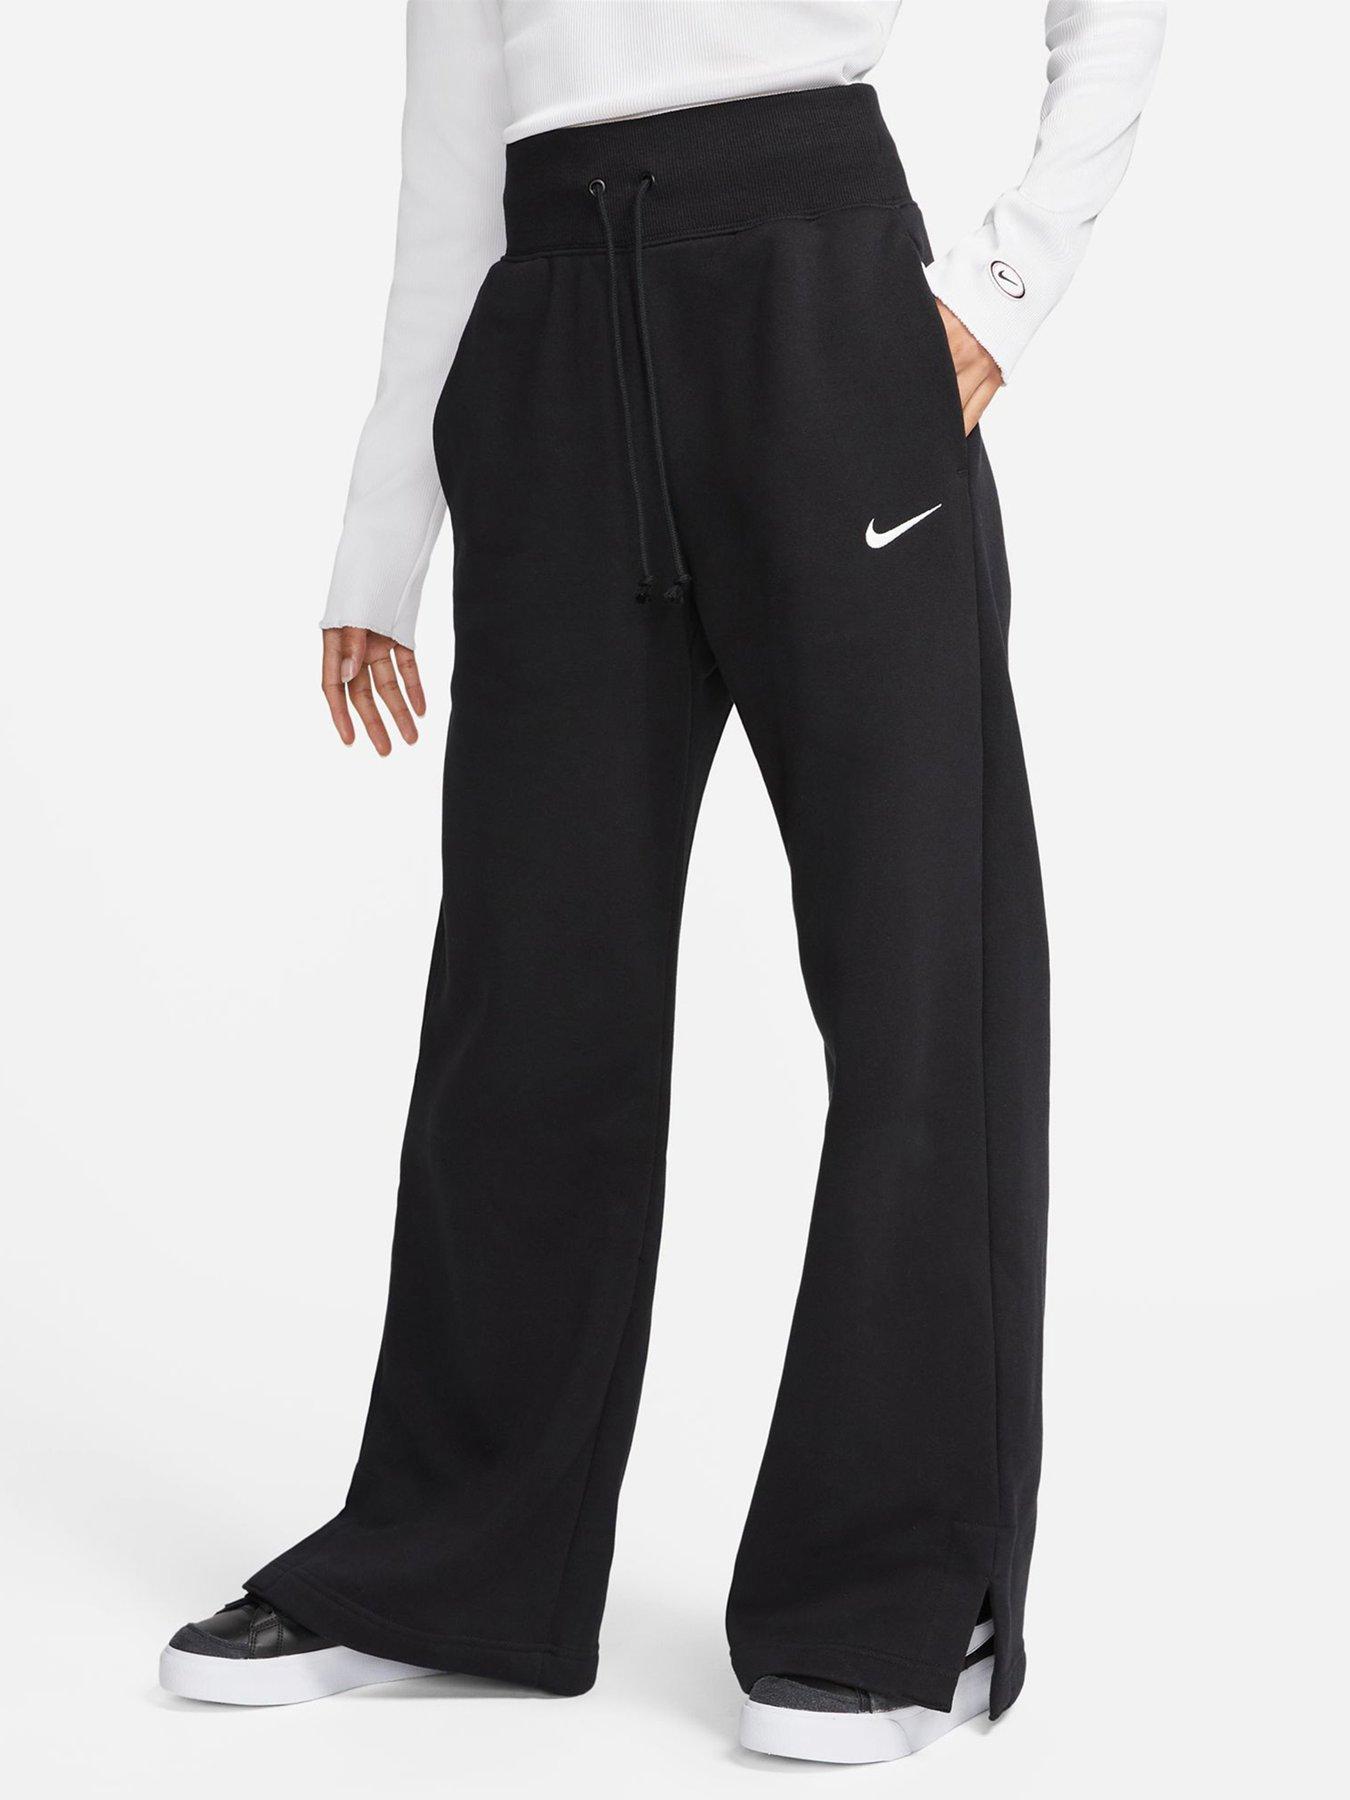 Nike, Pants & Jumpsuits, Nike Drifit Athletic Womens Capri Pants Size  Small Wide Leg Mid Rise Black